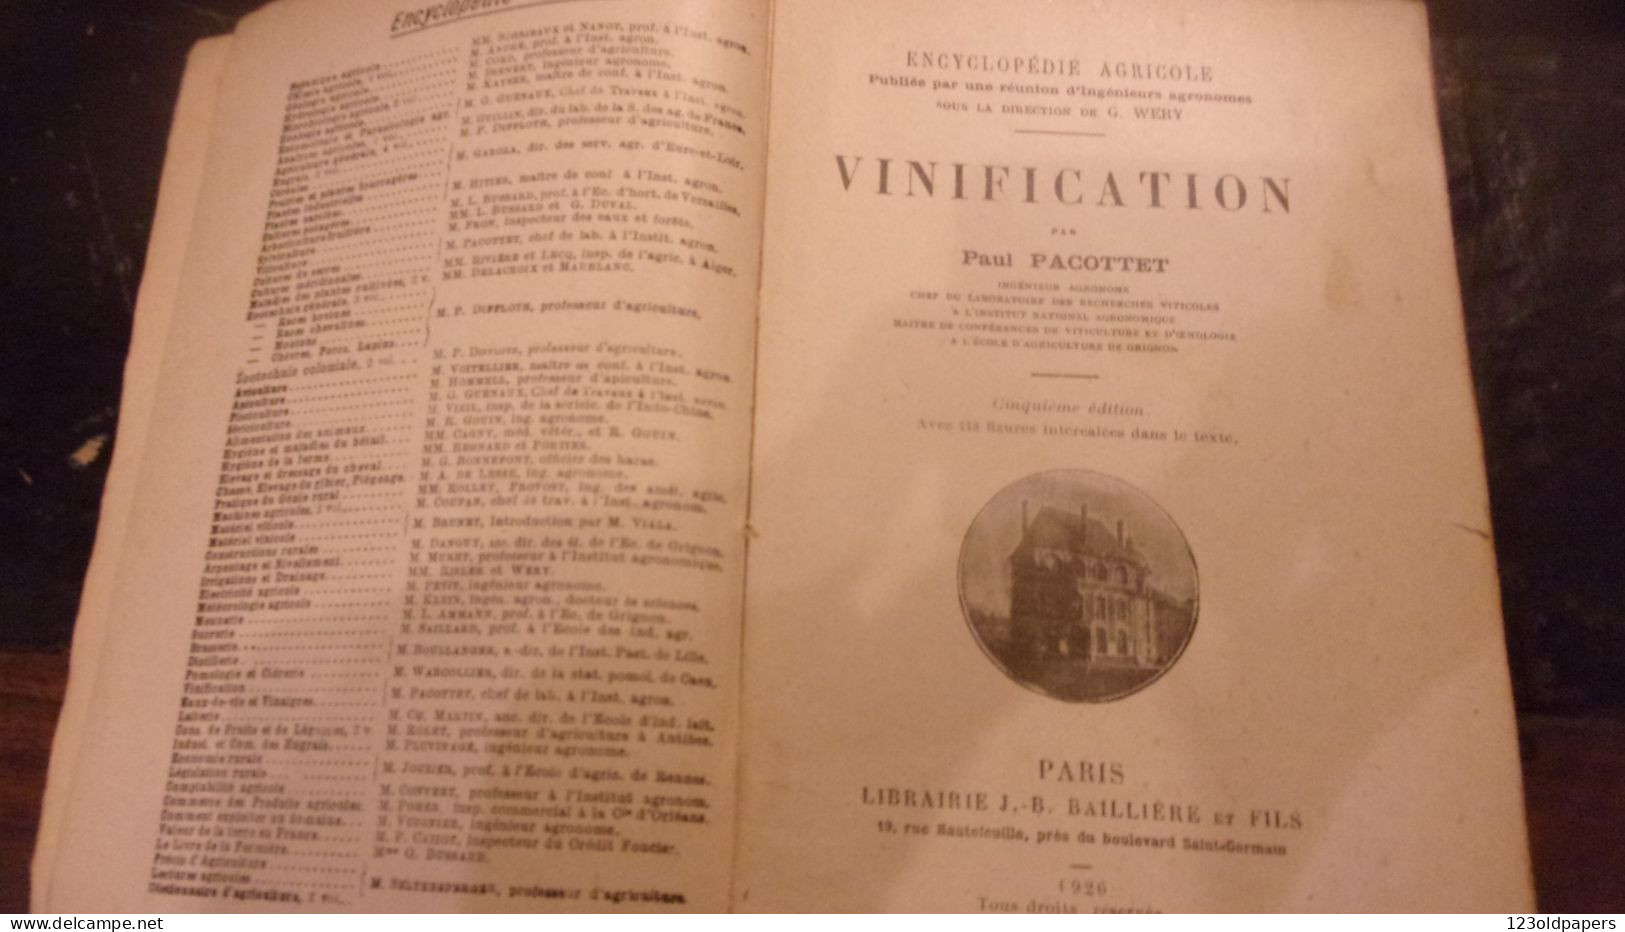 Vinification PACOTTET Paul 1926 ENCYCLOPEDIE AGRICOLE 463 P 118 Figures Et Photographies OENOLOGIE VIN VIGNE - Garten